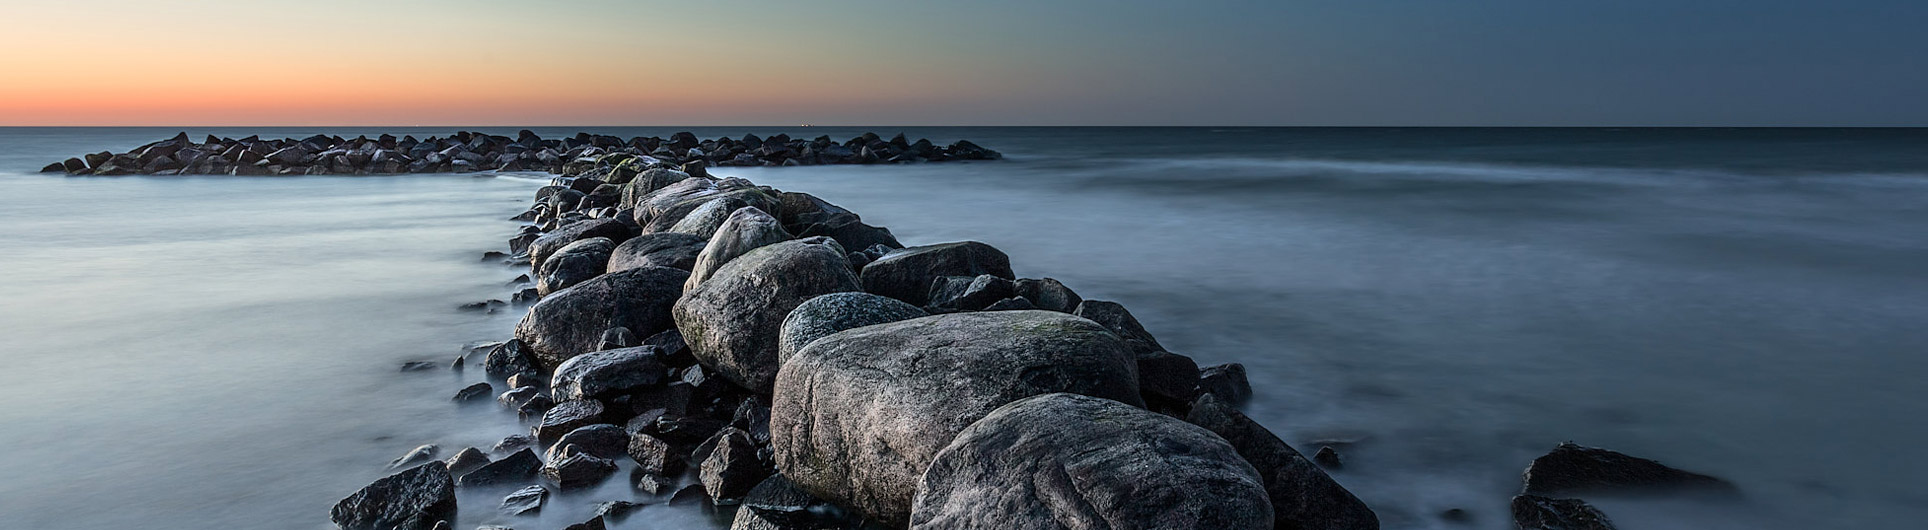 Steinbuhne im Sonnenuntergang an der Ostsee